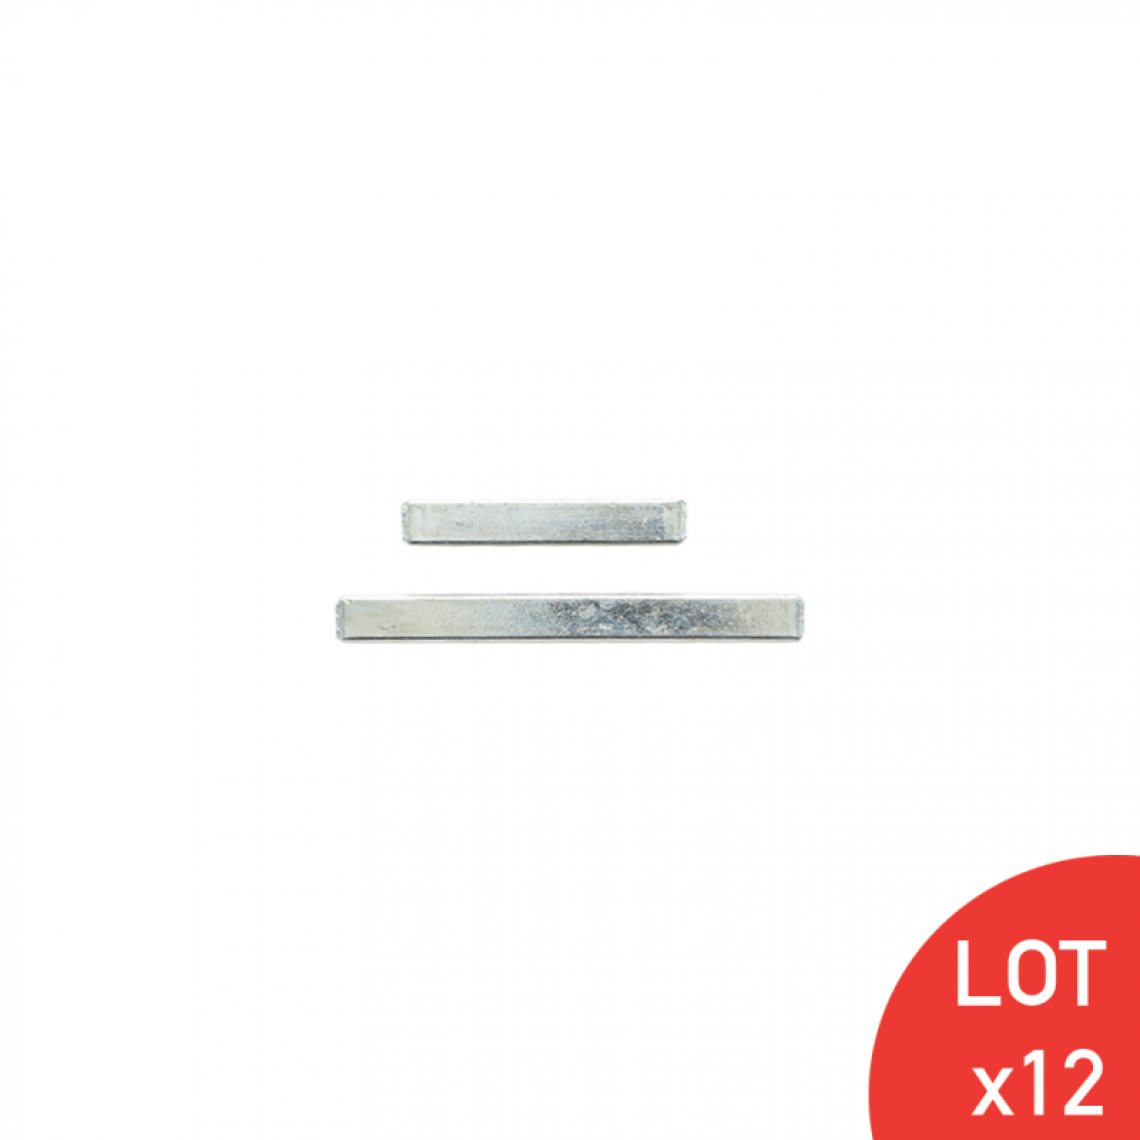 Secury-T - Tige carrée en acier zingué blanc plein 7X42/7X68 kit de 2 LOT DE 12 - Visserie